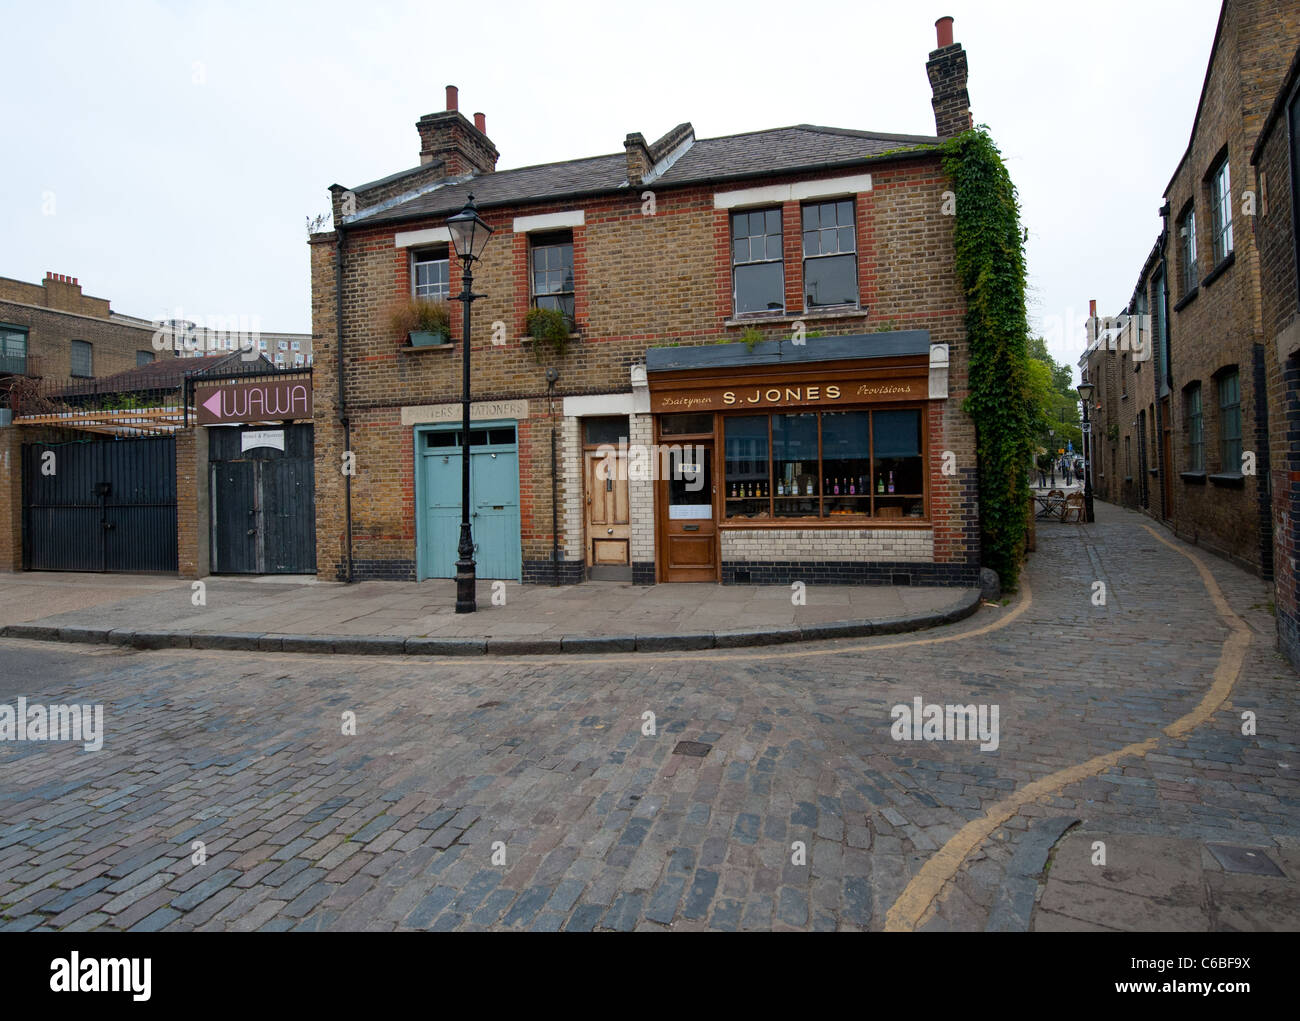 'S Jones' delicatessen in Hoxton, London Stock Photo